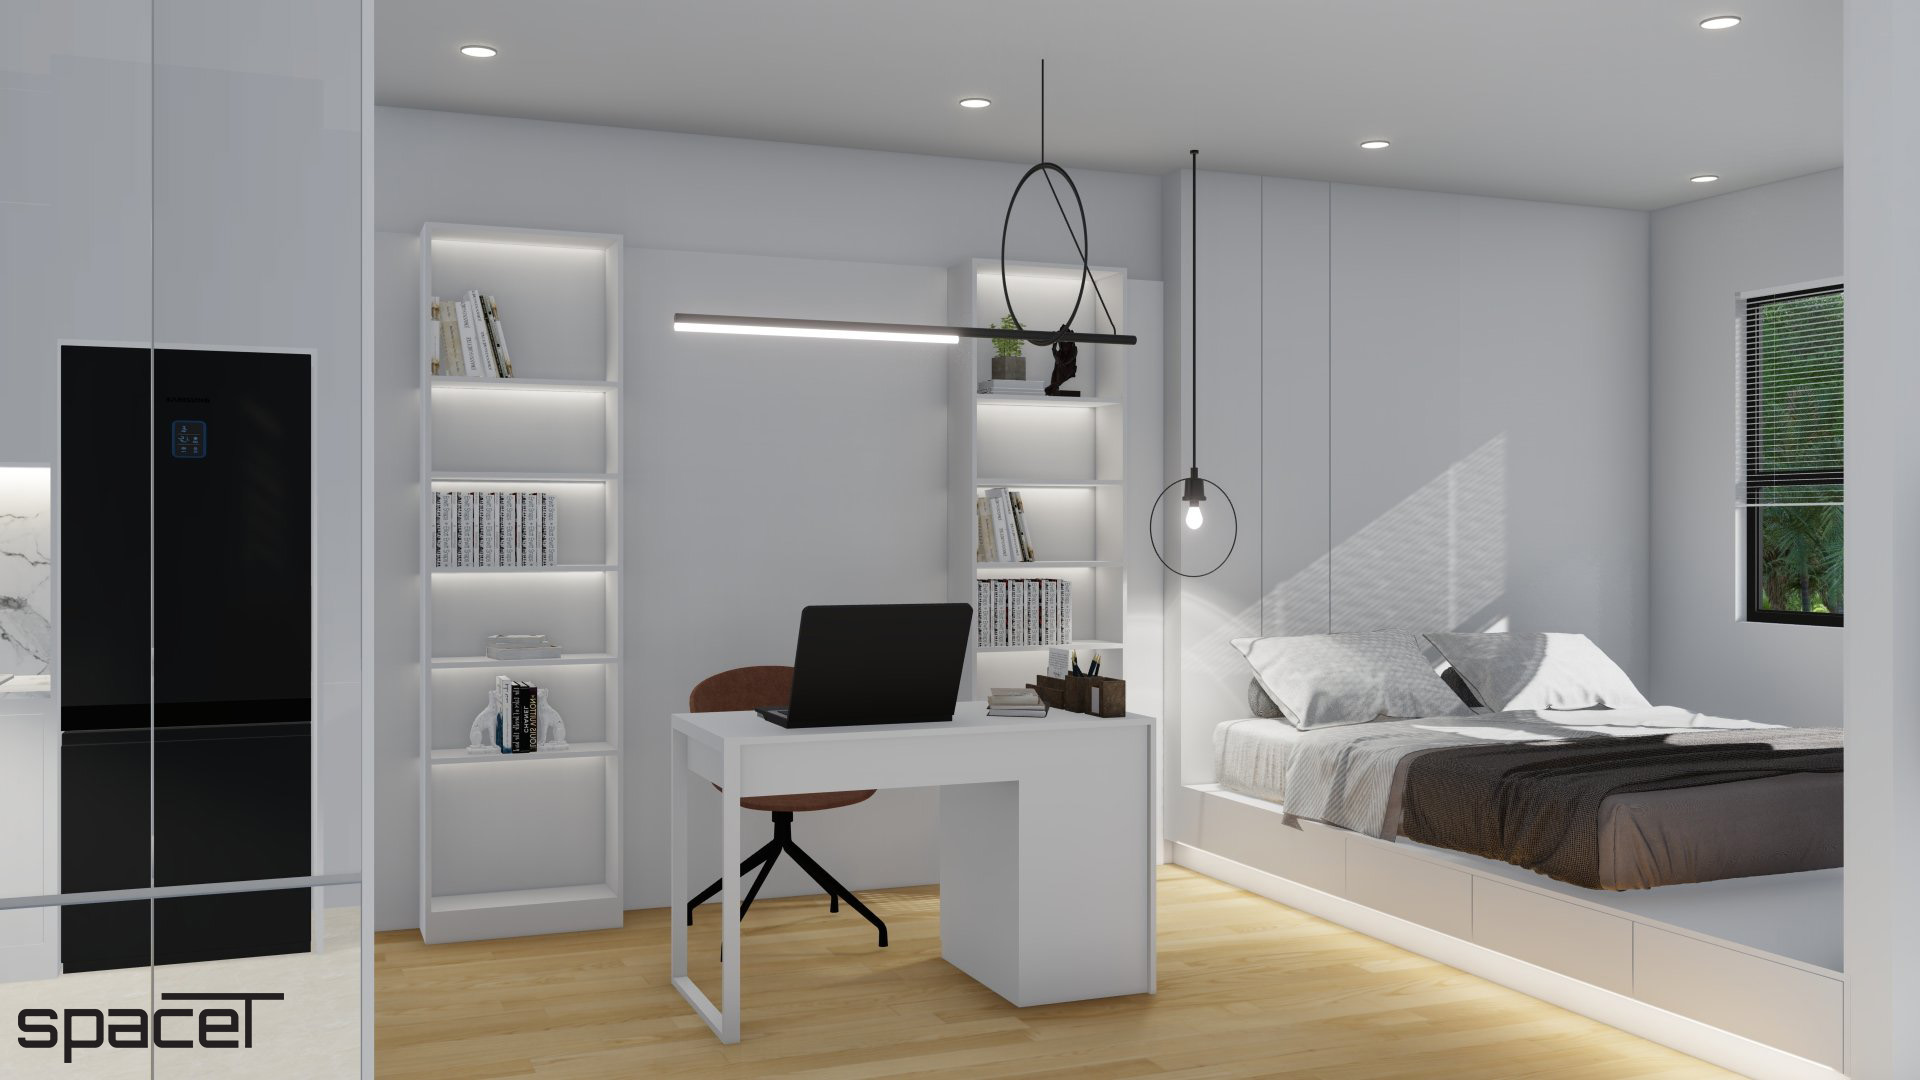 Phòng làm việc, phòng ngủ, phong cách Tối giản Minimalist, thiết kế concept nội thất, căn hộ The Origami Vinhomes Quận 9